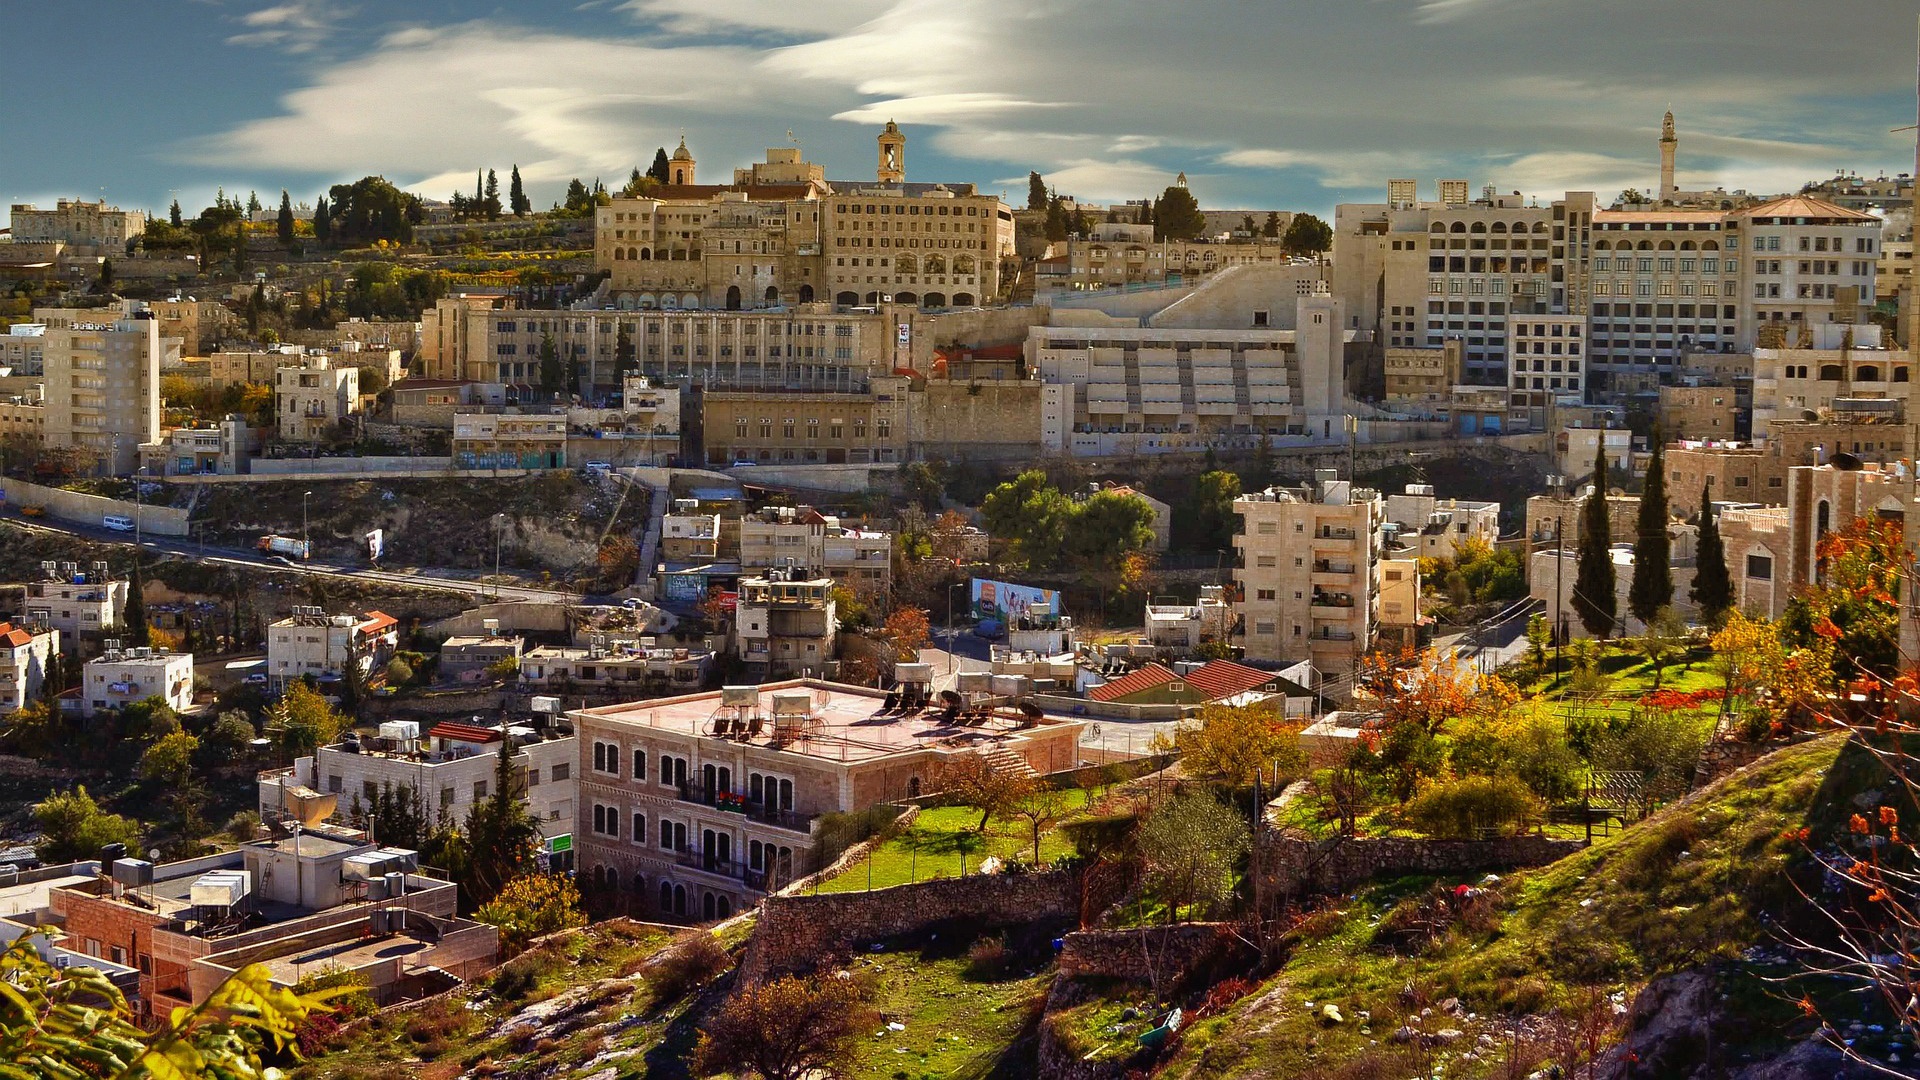 Stadtansicht von Bethlehem mit verschiedenen Häusern und Gebäuden